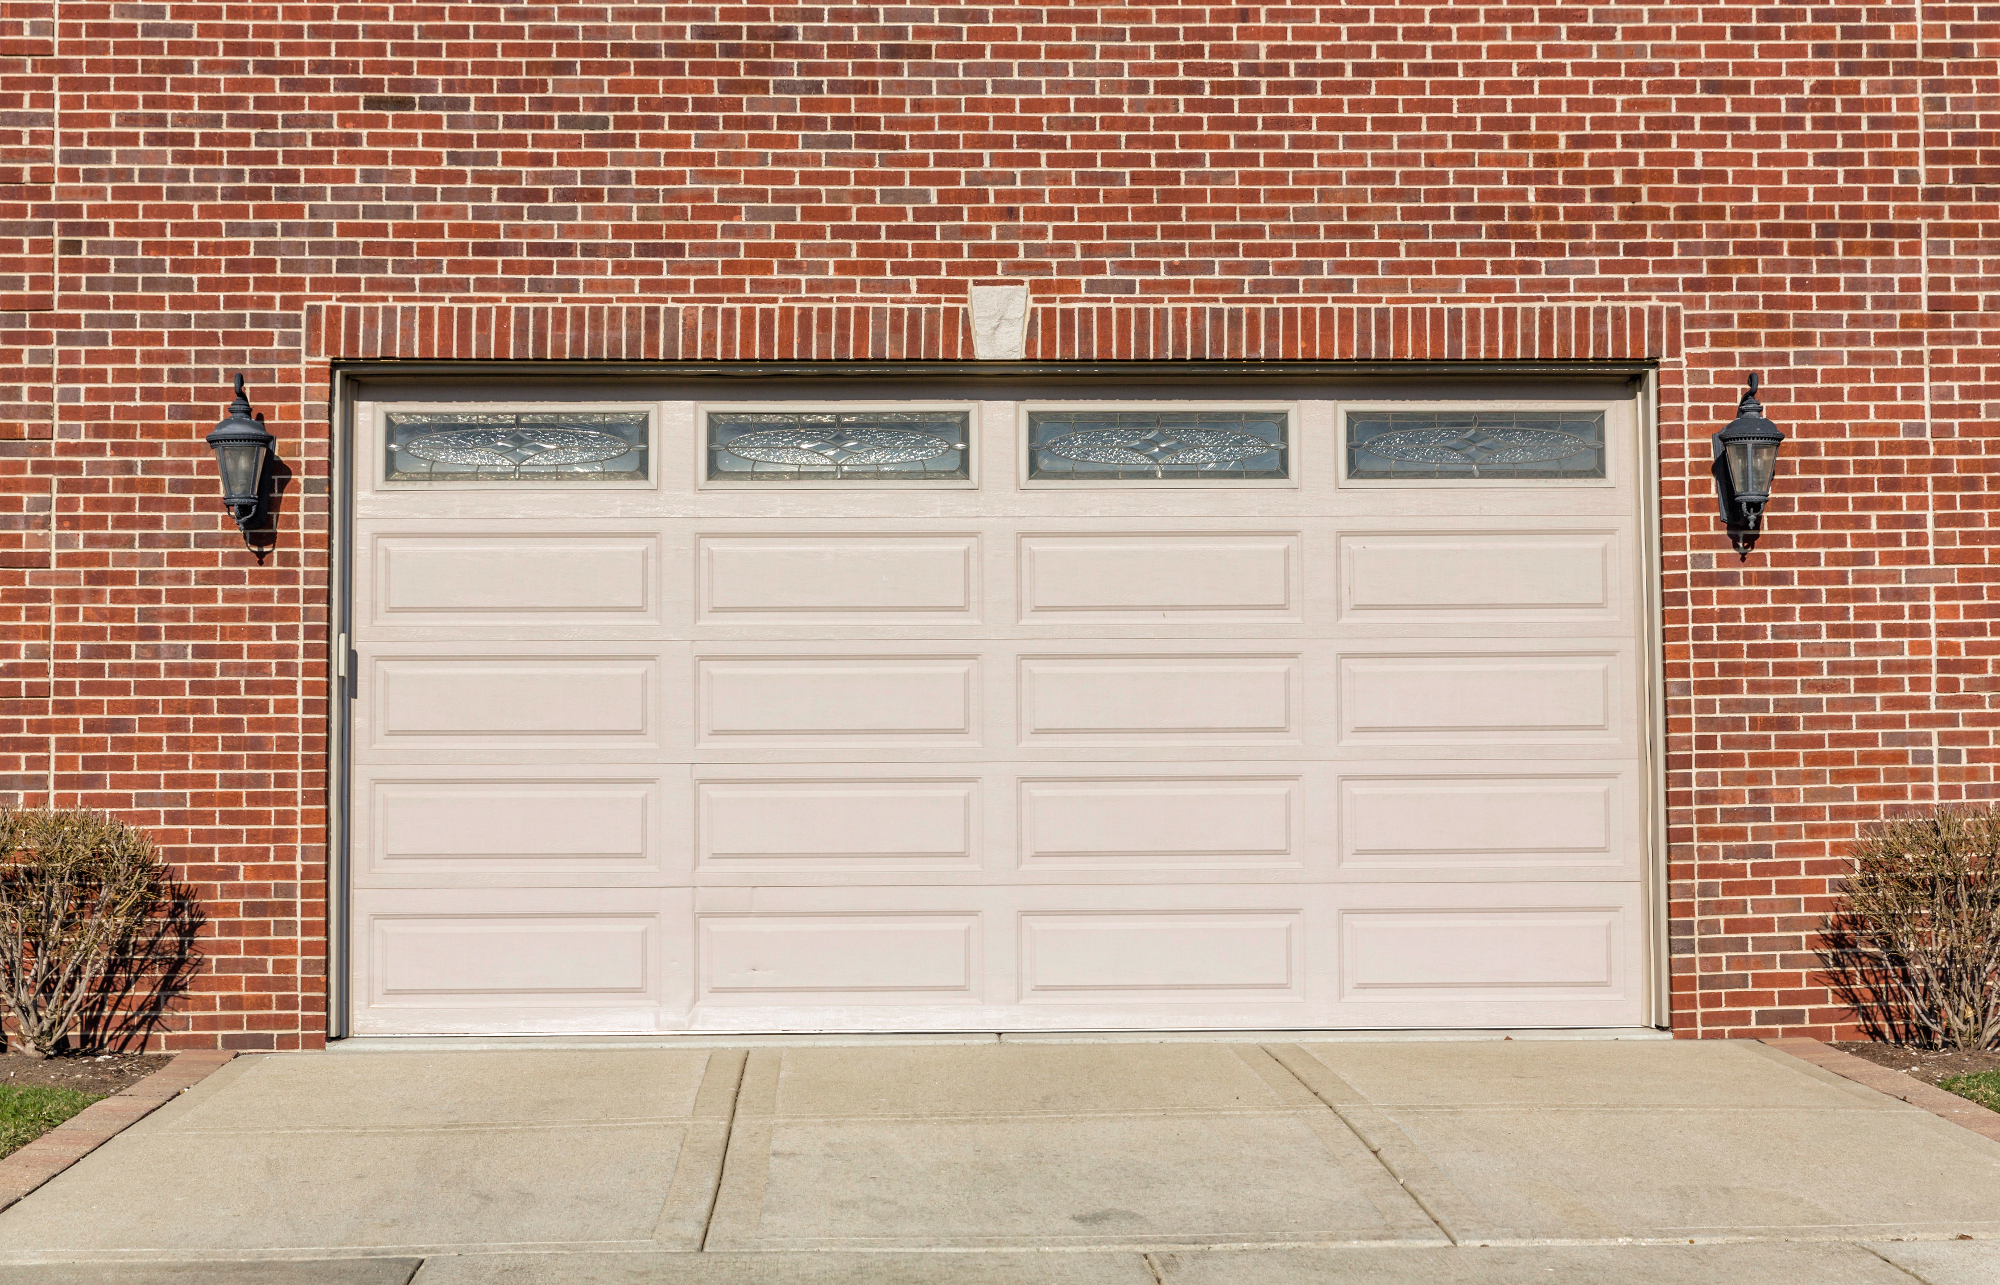 Garažna vrata lahko močno vplivajo na izgled hiše